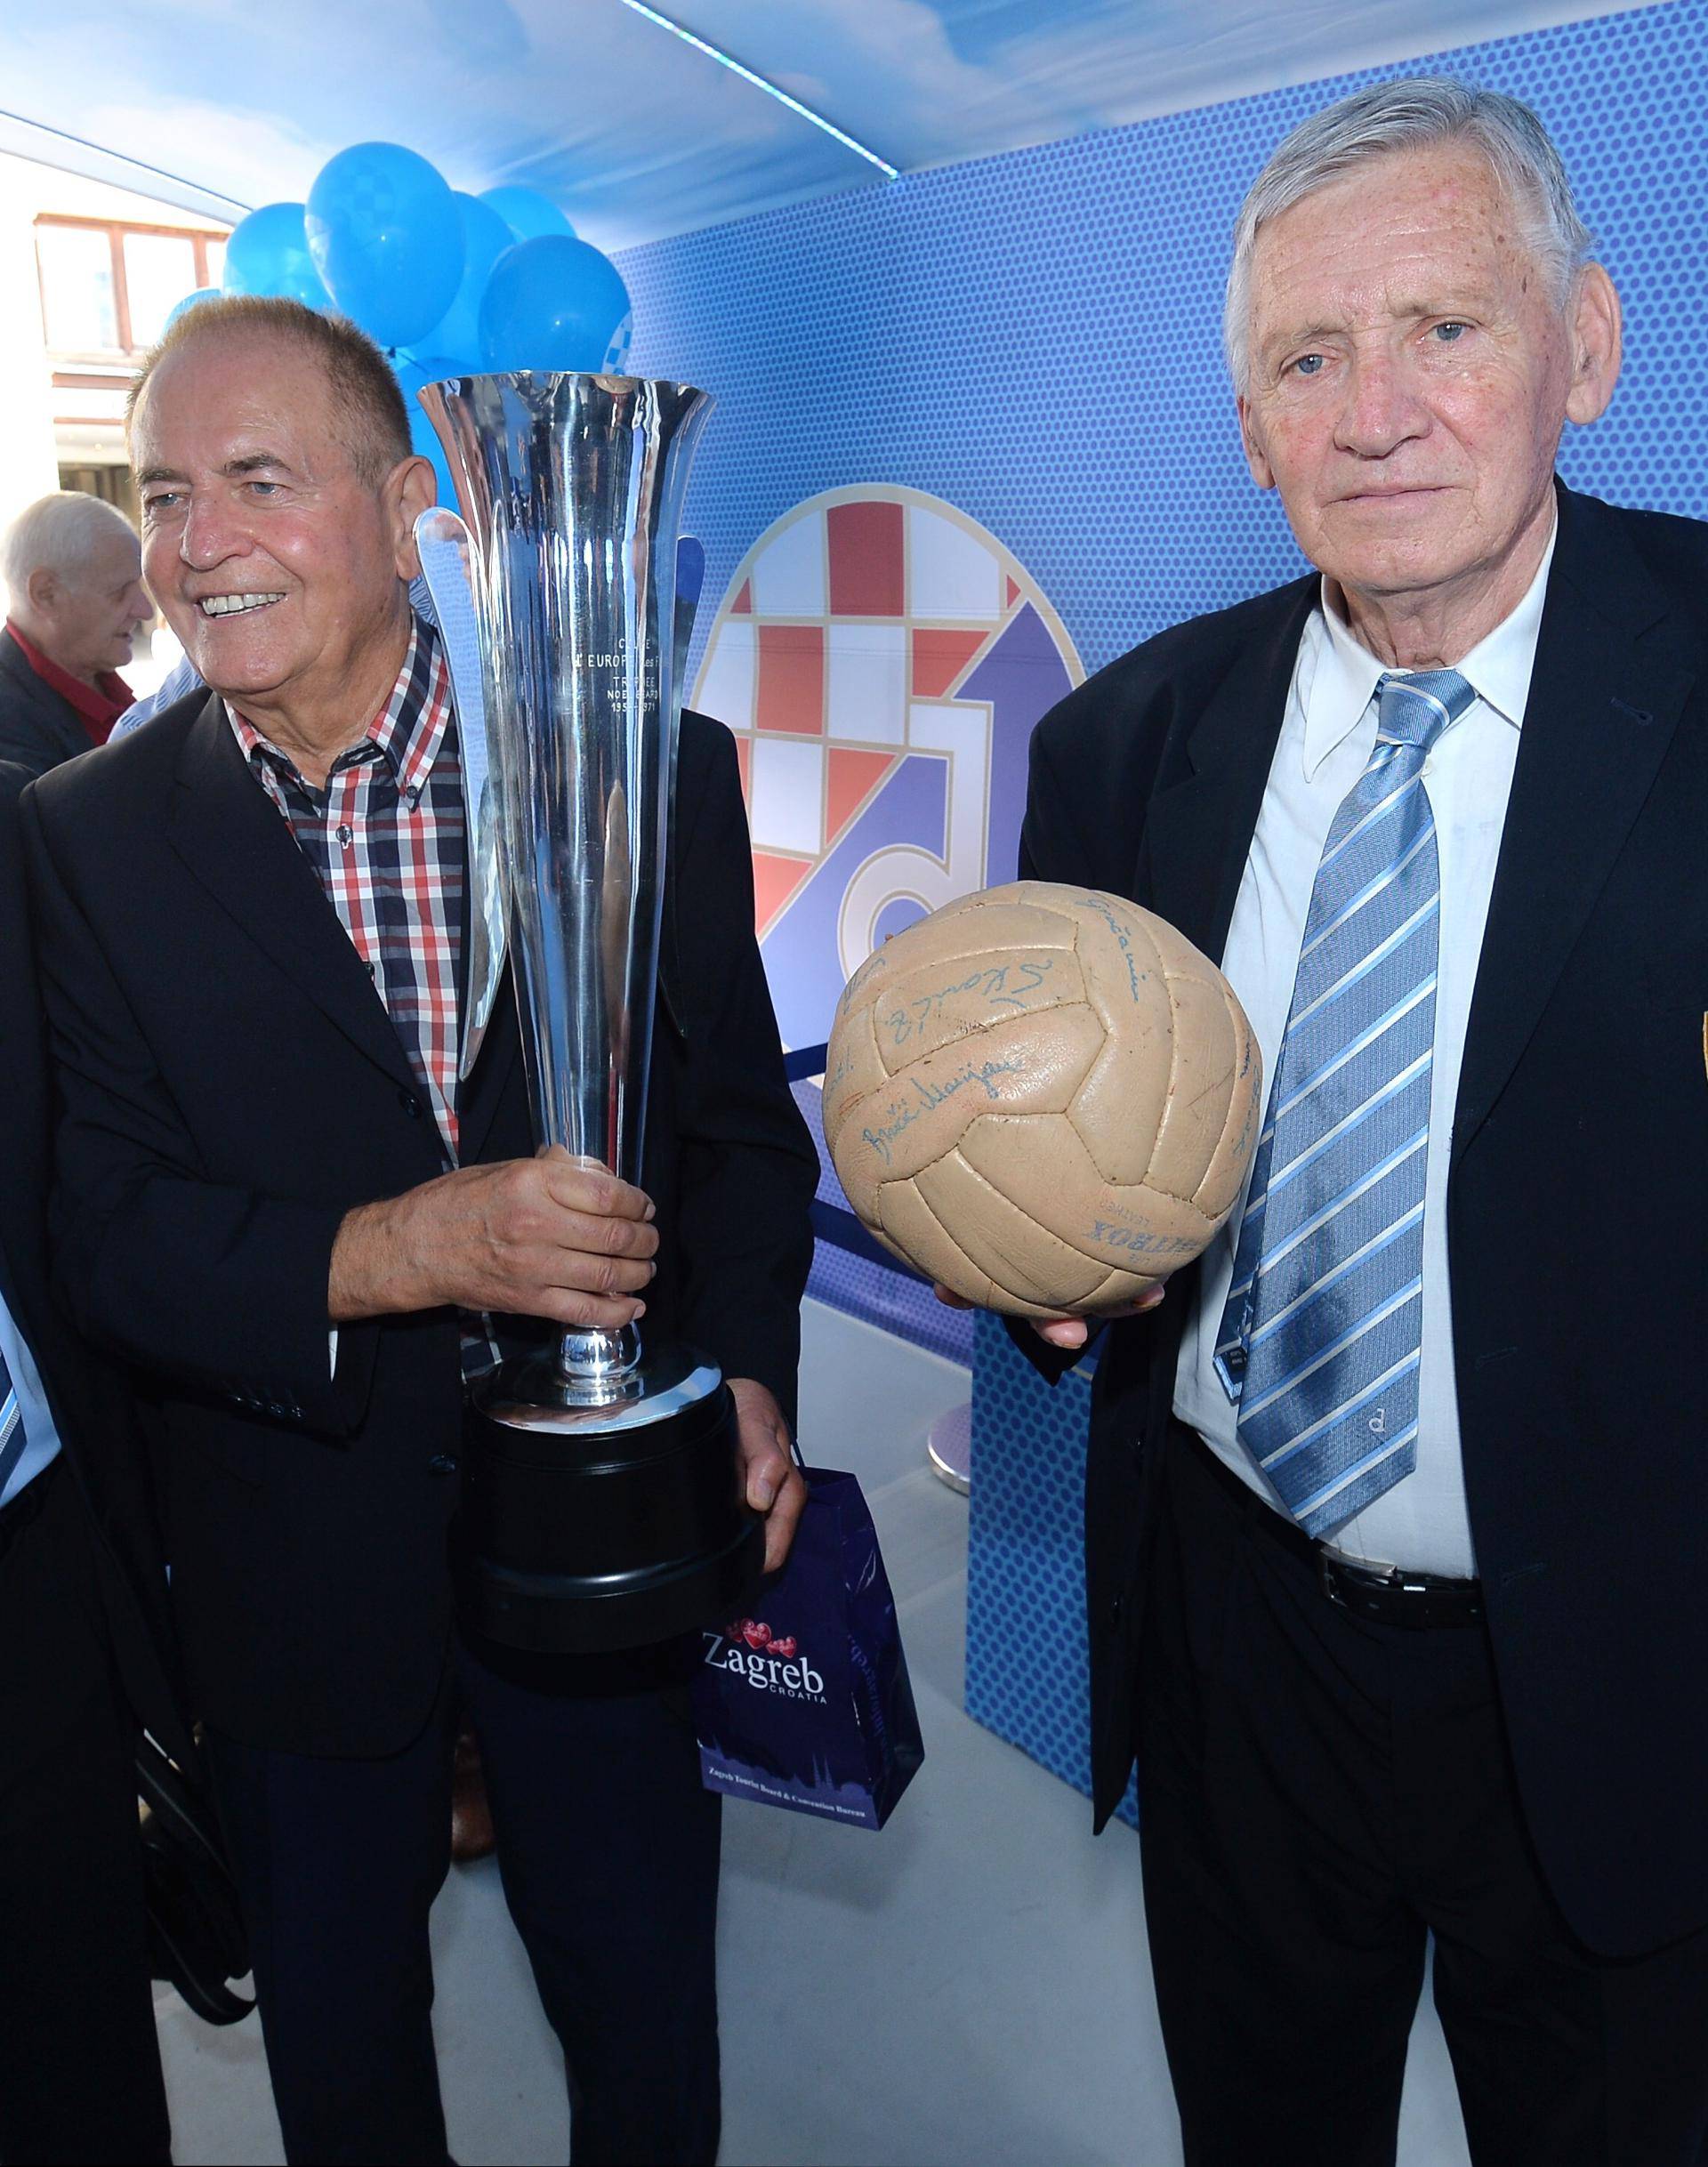 Štef Lamza, Zambata, Rora...: Prije 54 godine 'modri' su digli najveći trofej u svojoj povijesti!